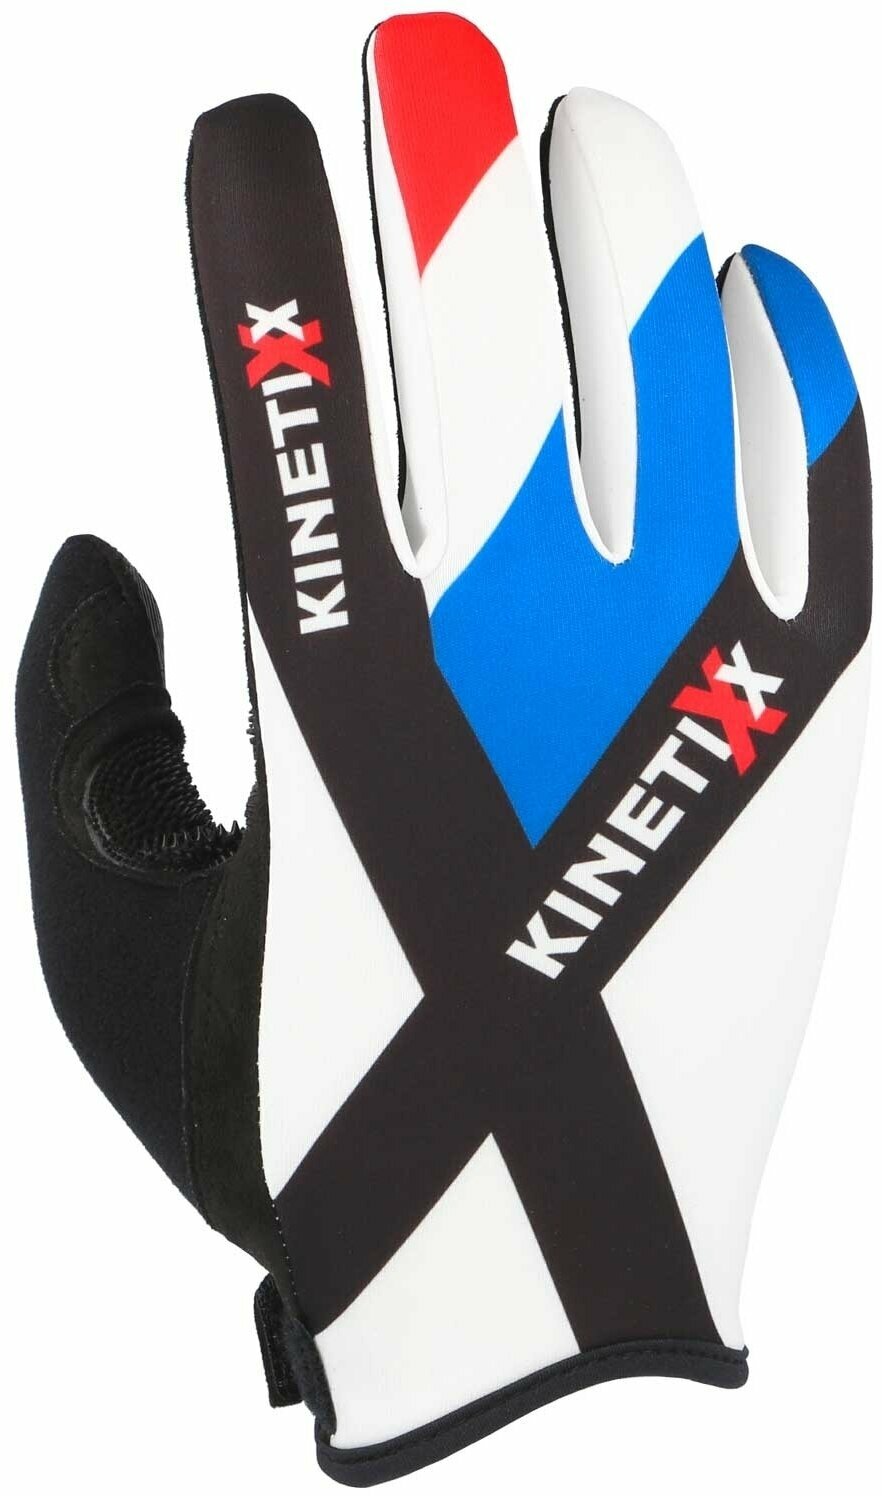 Skijaške rukavice KinetiXx Folke Country Flag Country Flag France 8,5 Skijaške rukavice